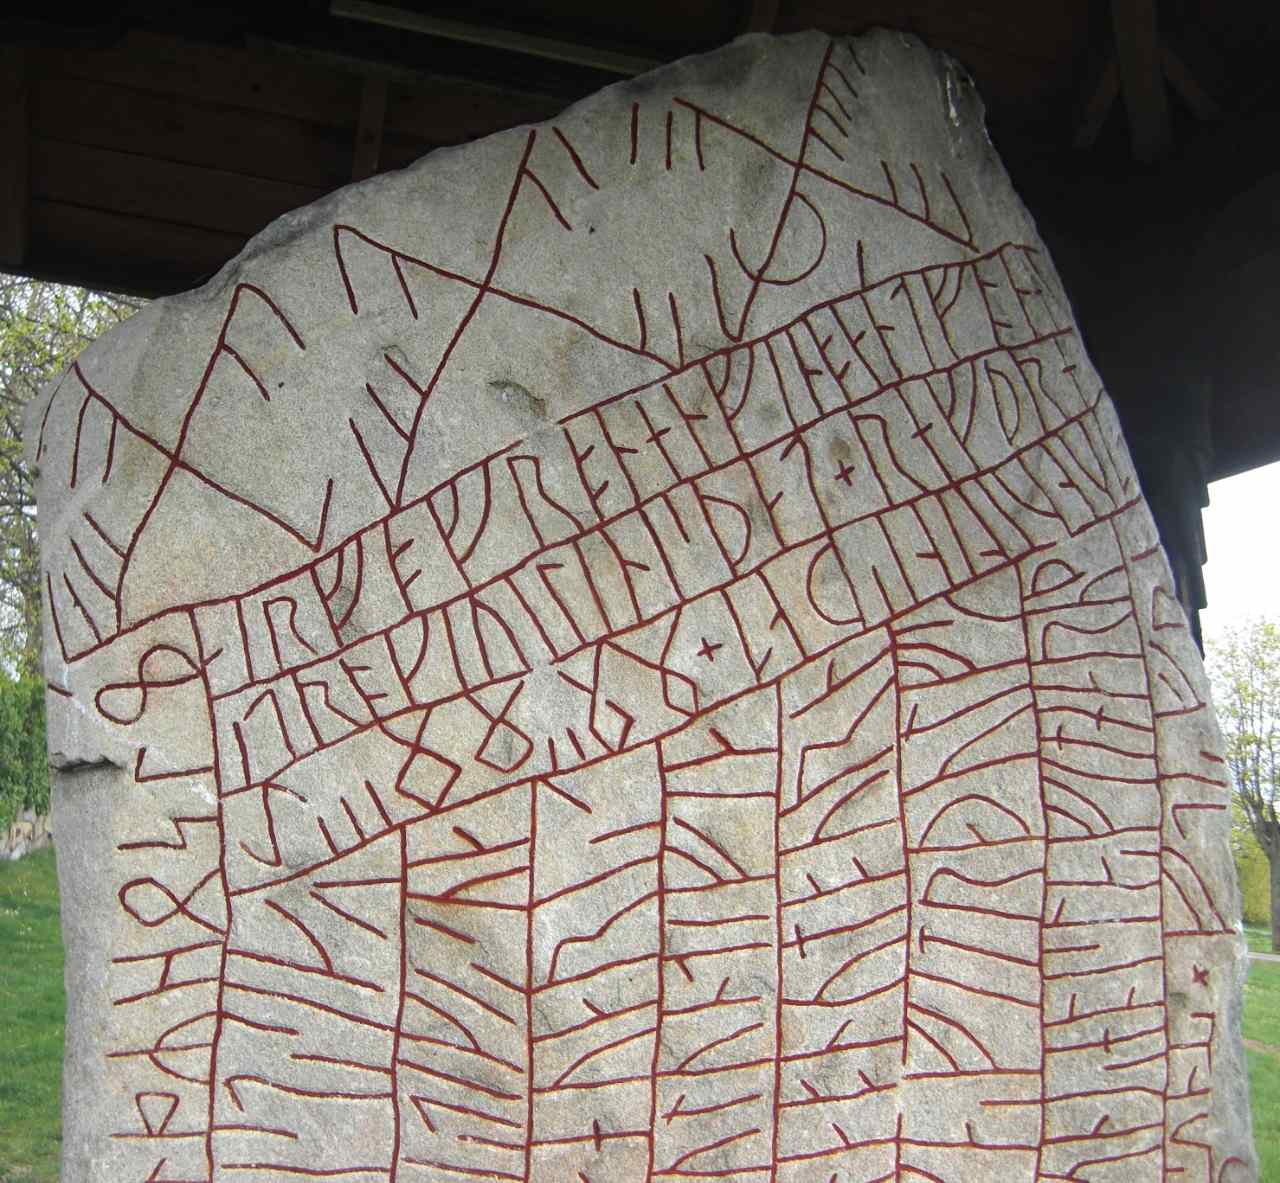 U misteriosu Rök Runestone hà avvistatu u cambiamentu climaticu in u passatu 1